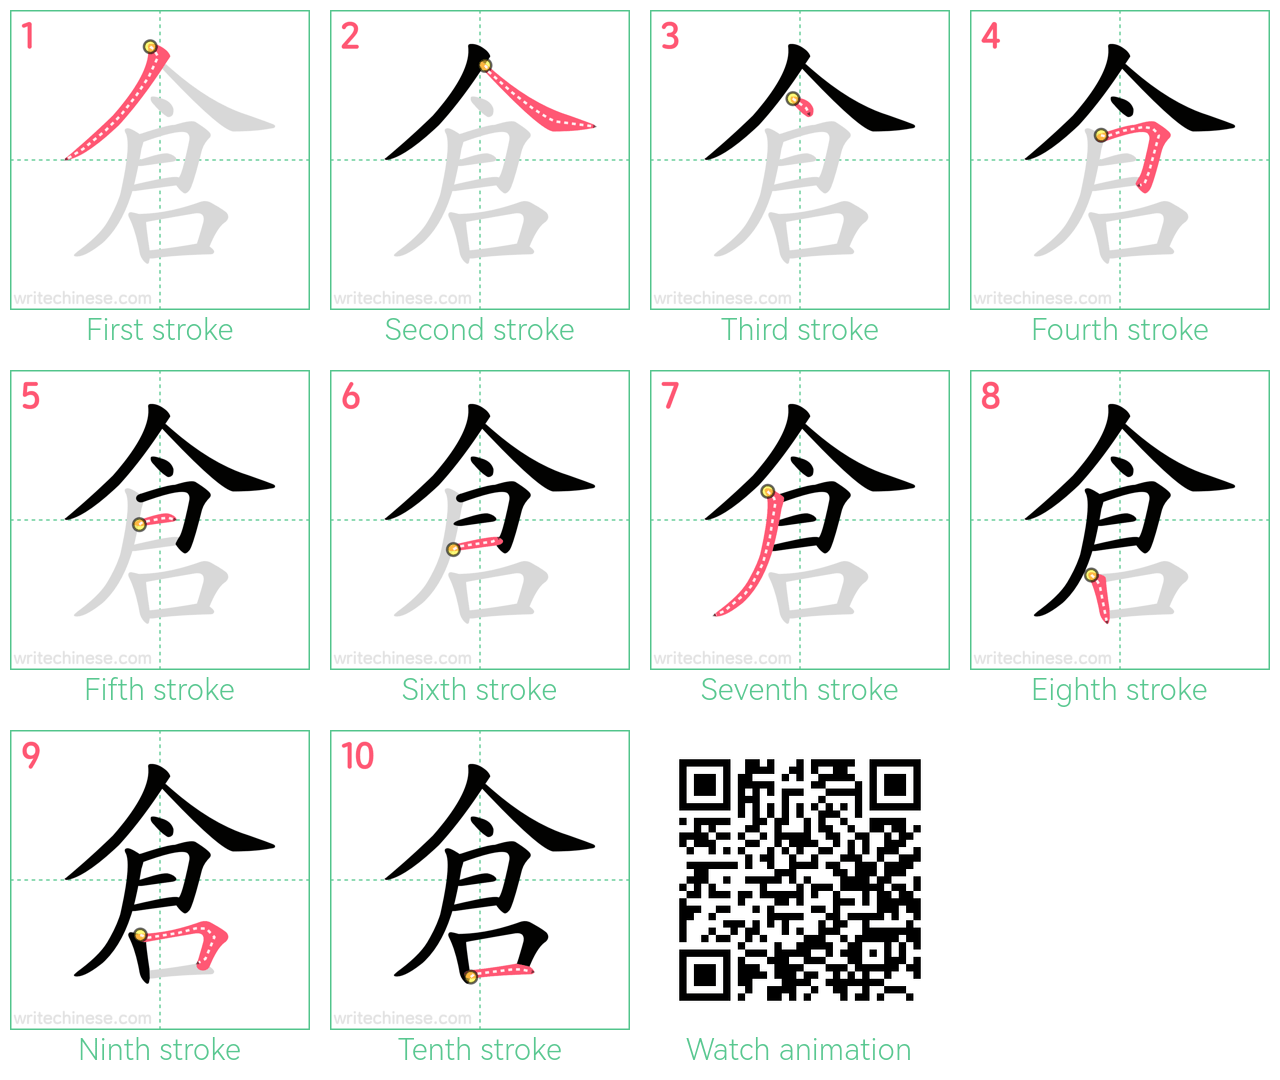 倉 step-by-step stroke order diagrams